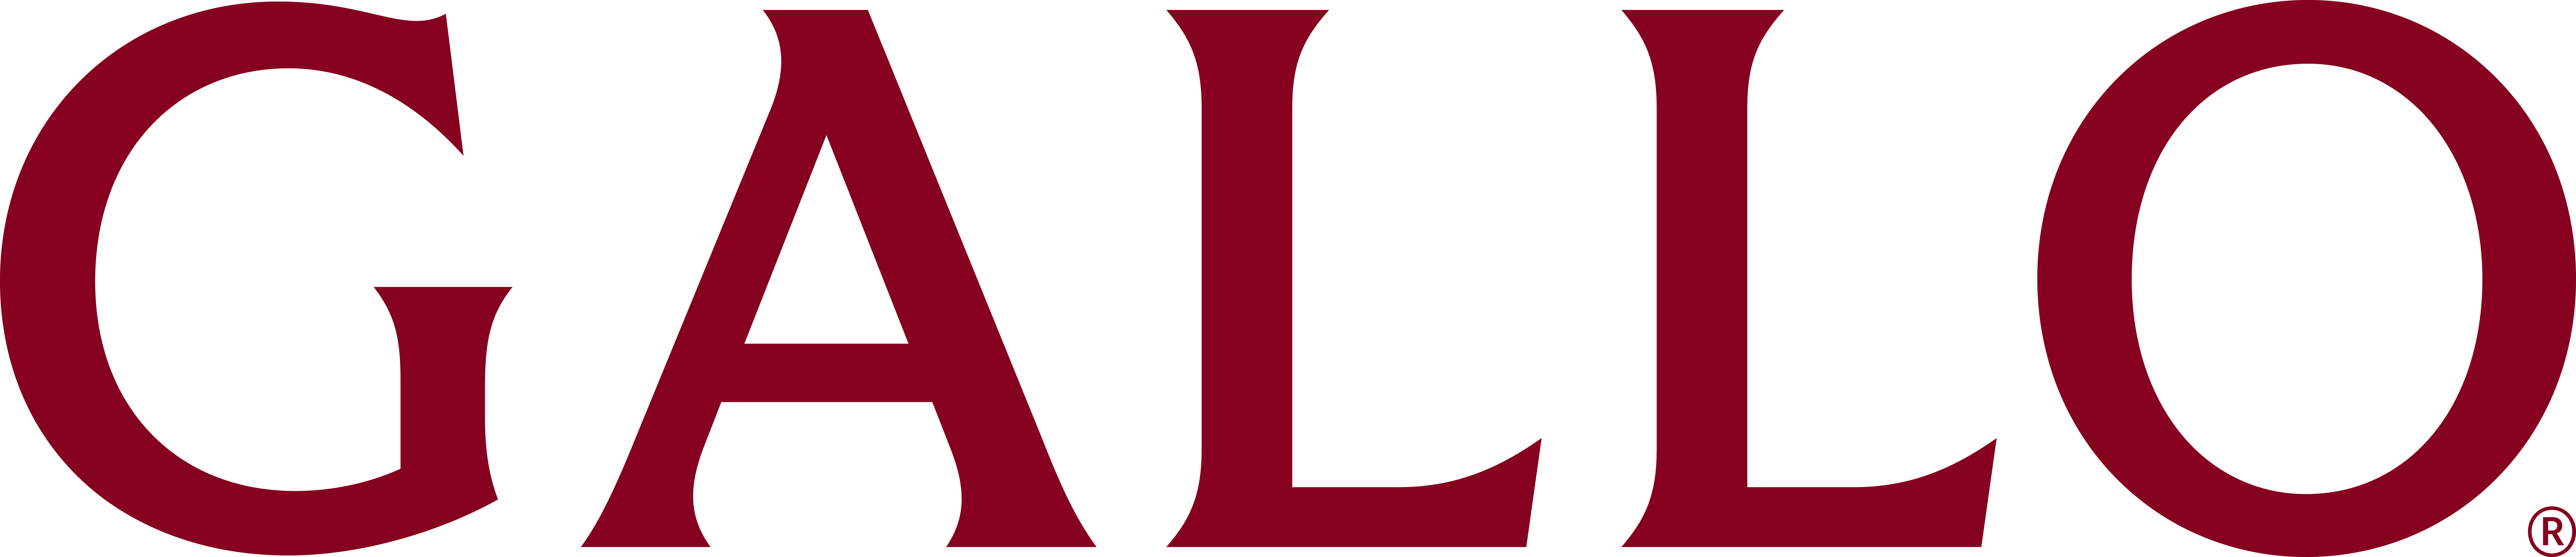 Gallo Winery logo